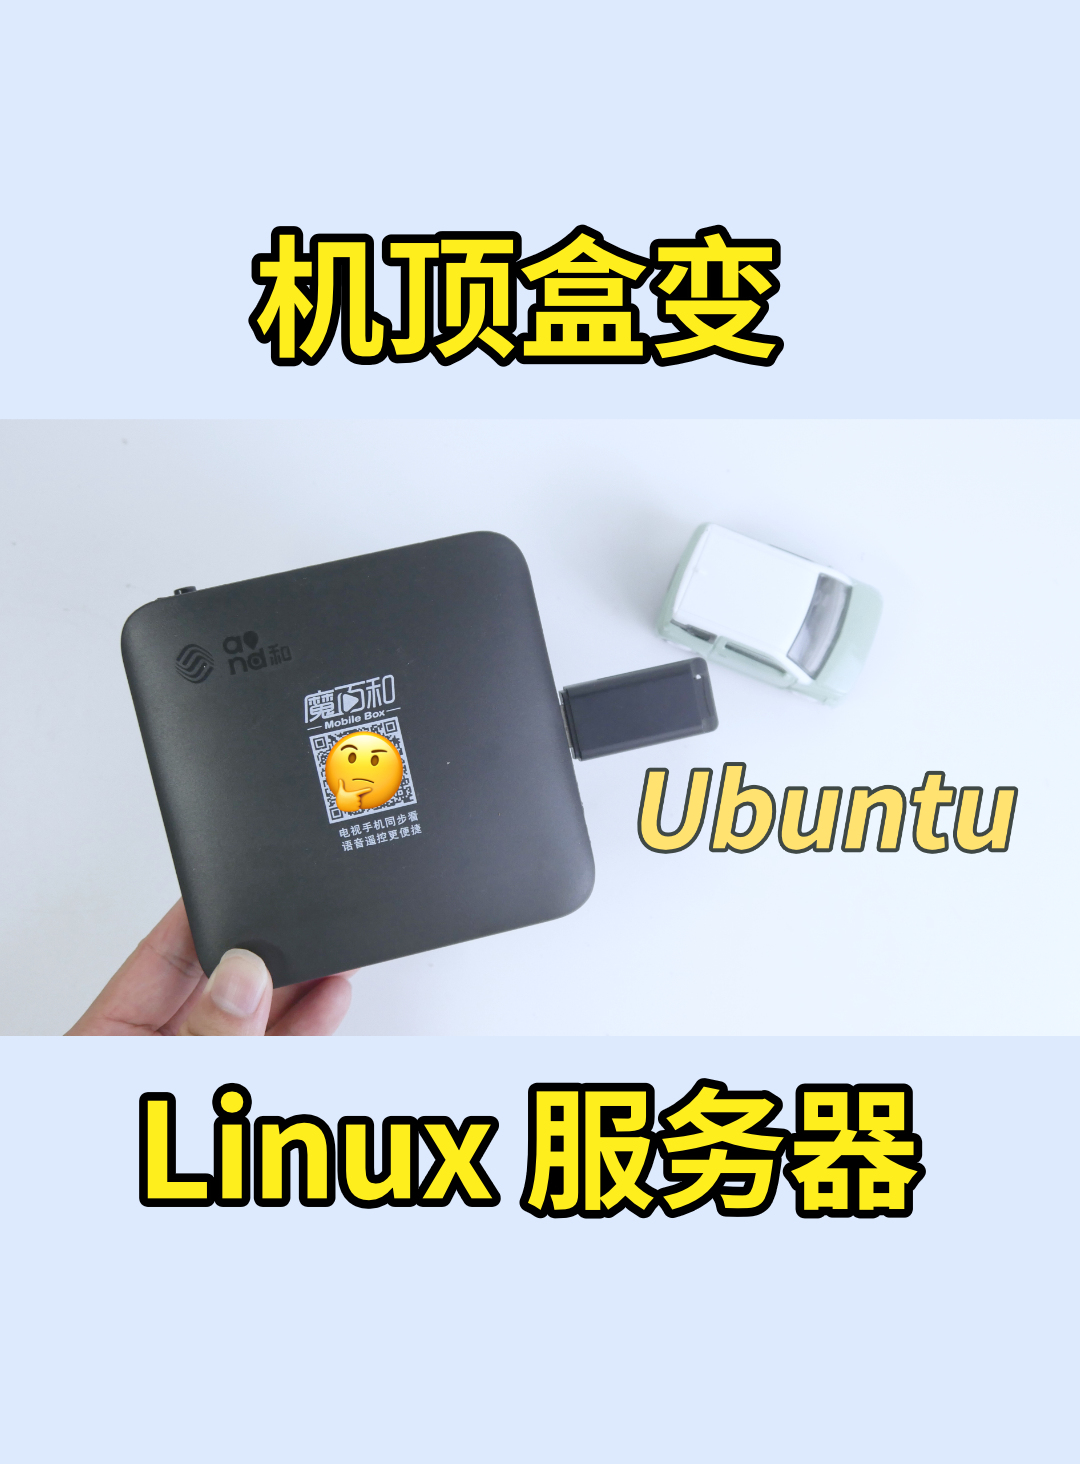 又把機頂盒刷為 Ubuntu 當 Linux 服務器，新款魔百盒 CM311-1A-YST 刷 armbian